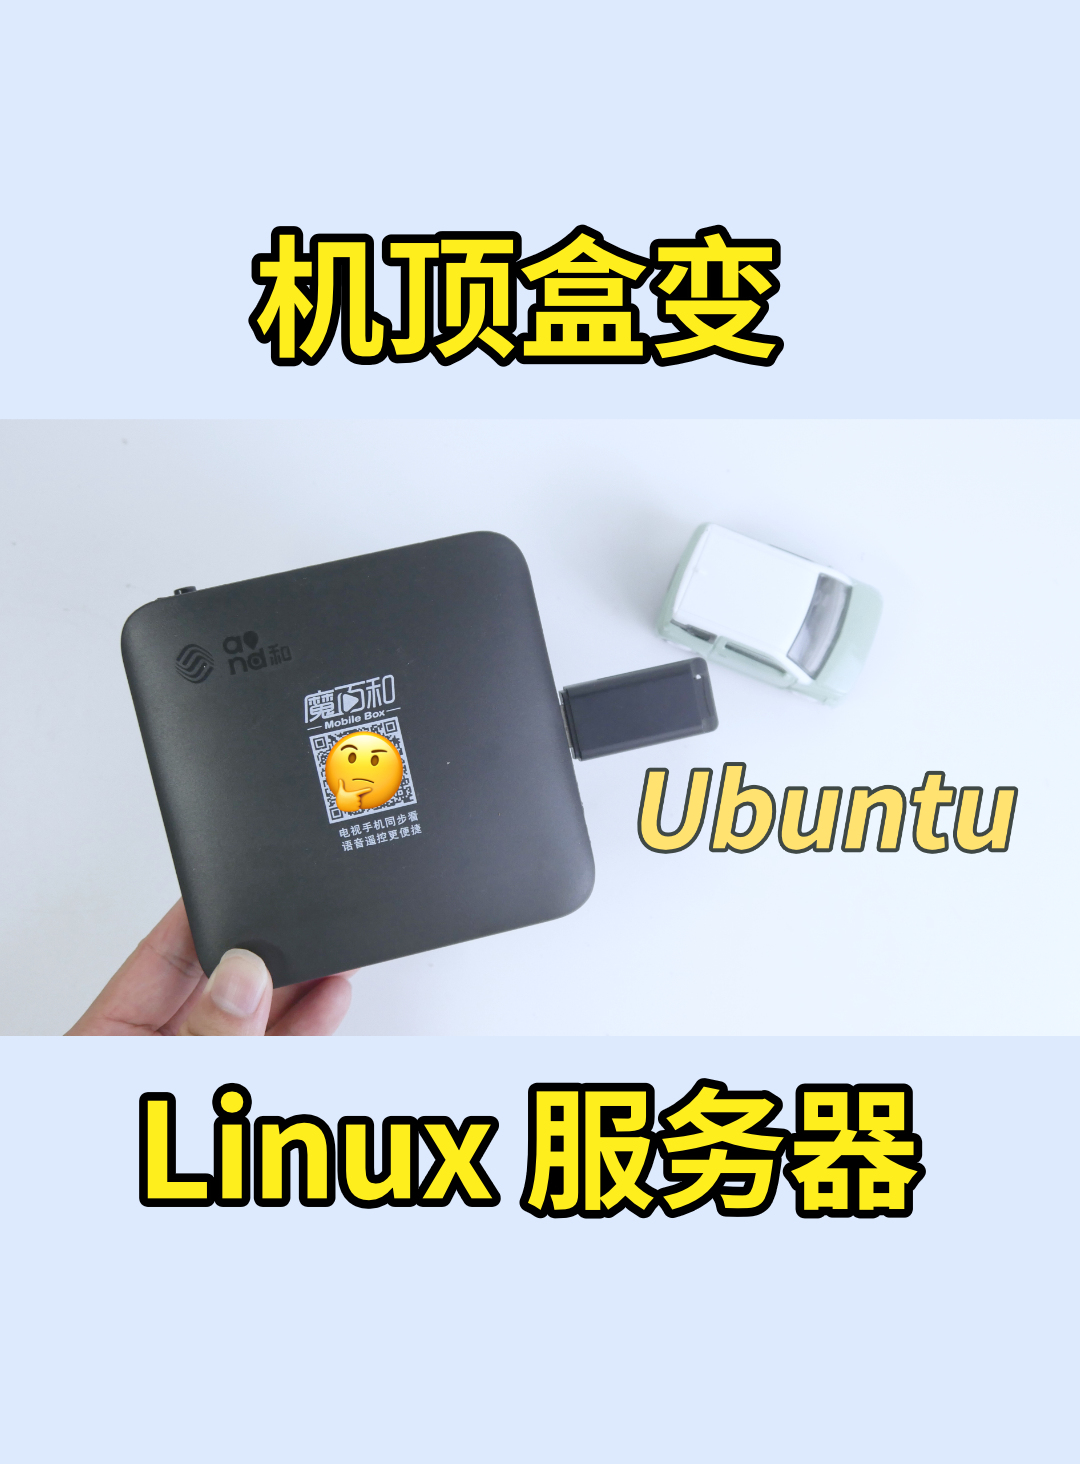 又把機頂盒刷為 Ubuntu 當 Linux 服務器，新款魔百盒 CM311-1A-YST 刷 armbian